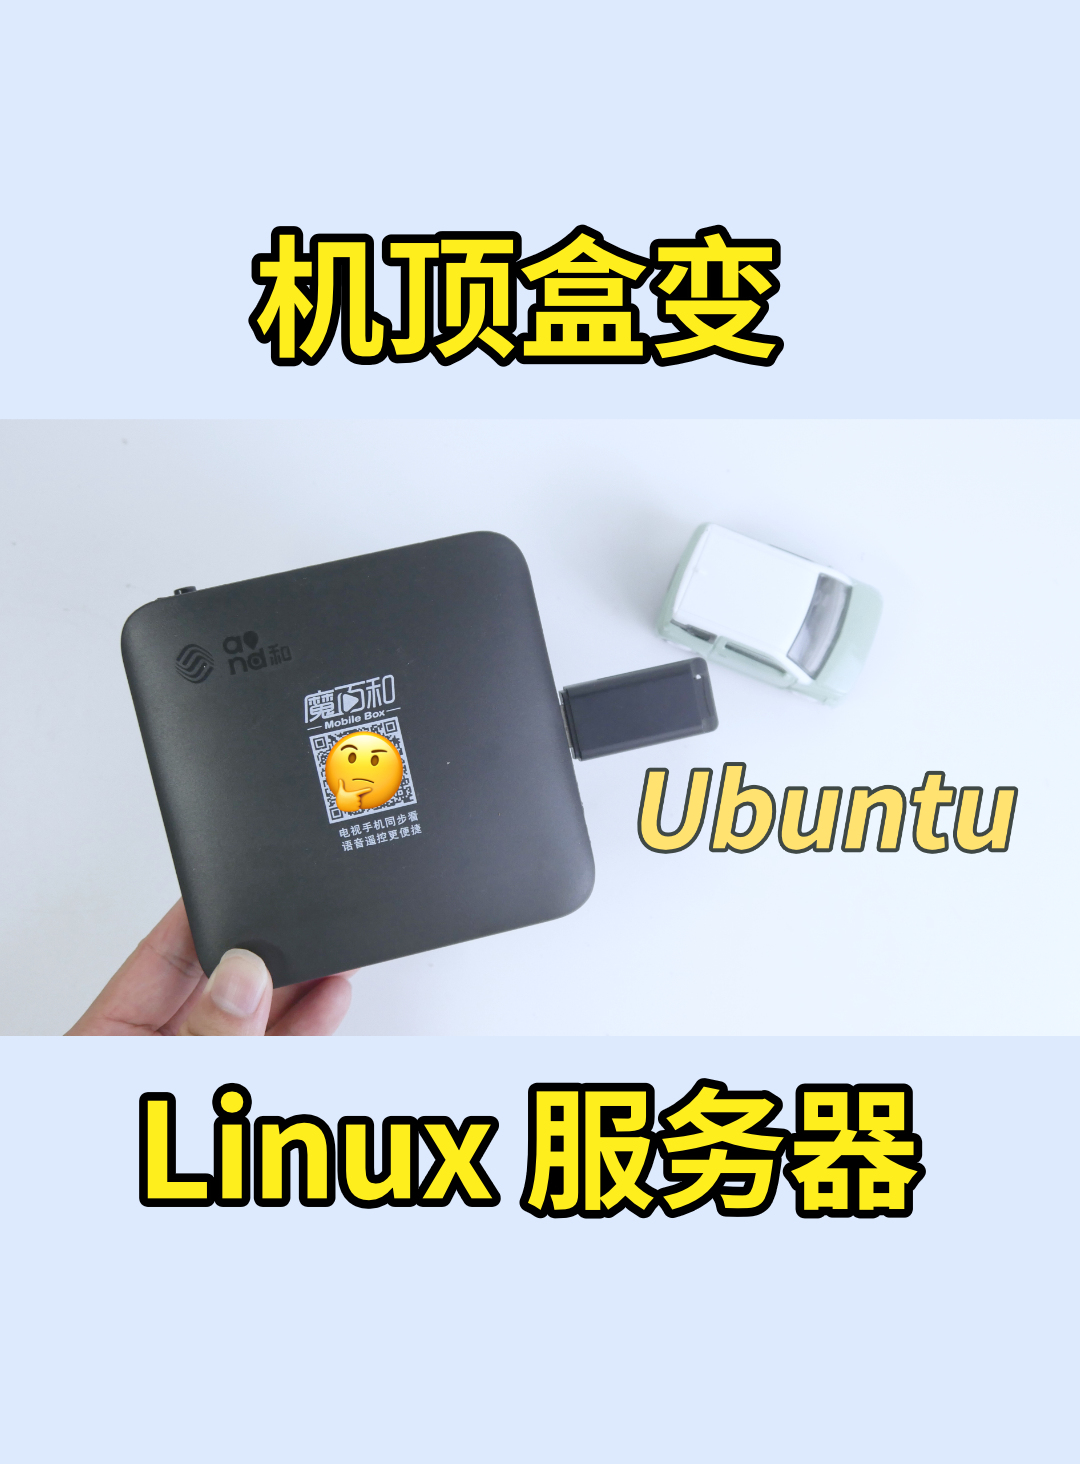 又把機頂盒刷為 Ubuntu 當 Linux 服務器，新款魔百盒 CM311-1A-YST 刷 armbian